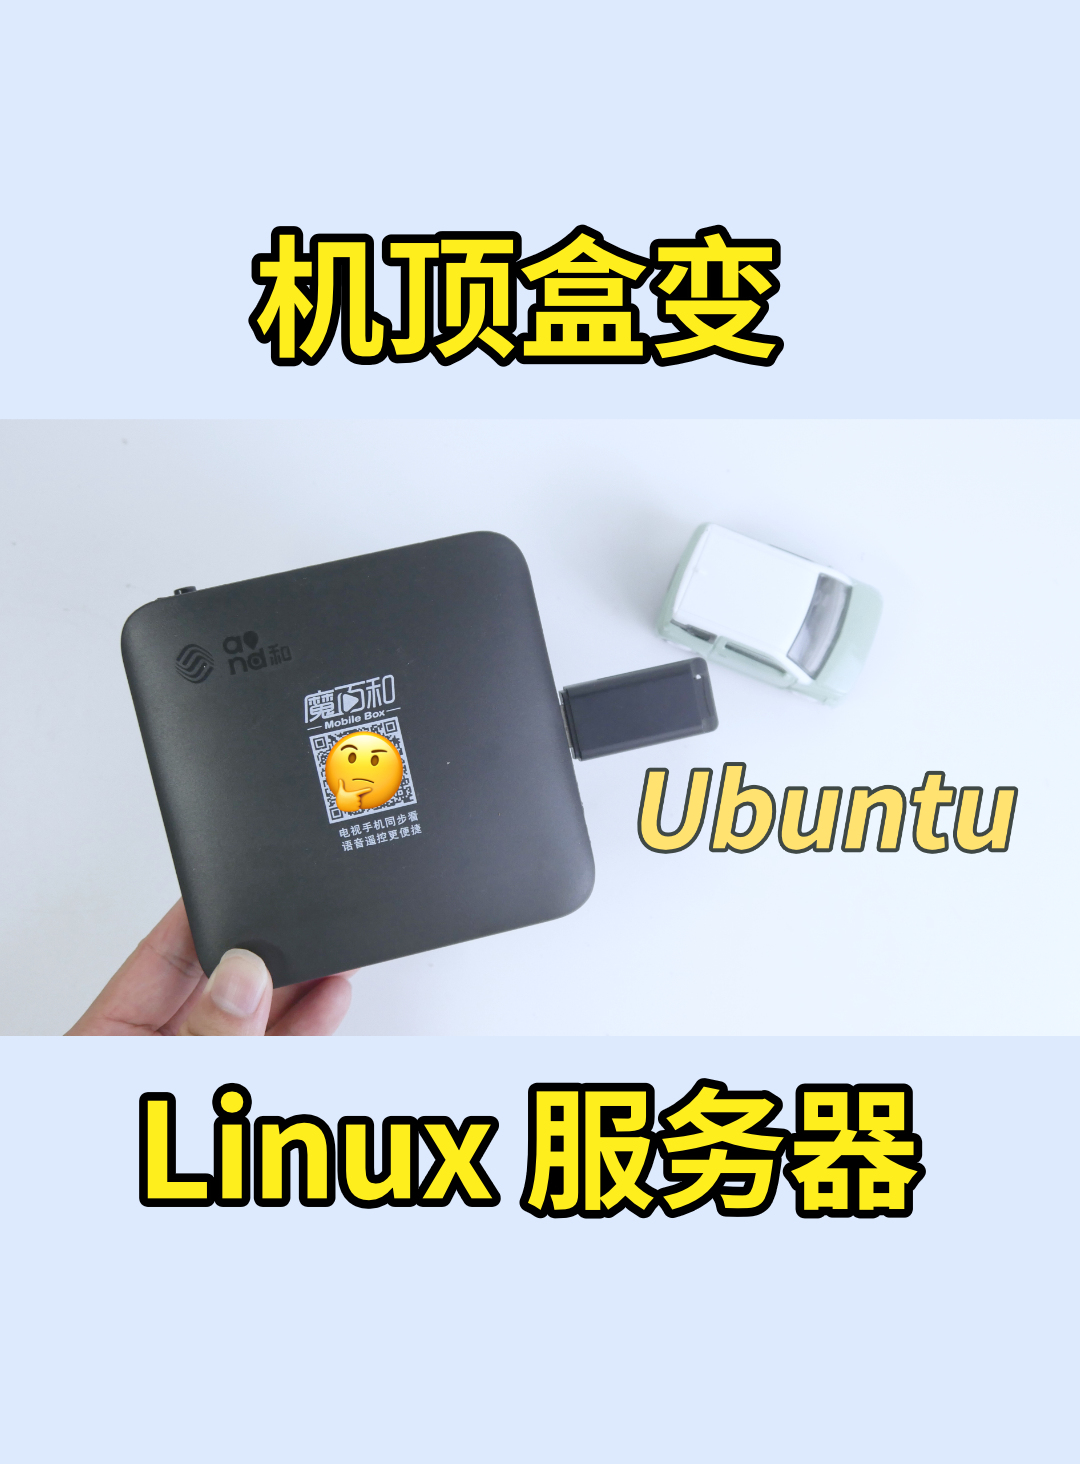 又把機頂盒刷為 Ubuntu 當 Linux 服務器，新款魔百盒 CM311-1A-YST 刷 armbian